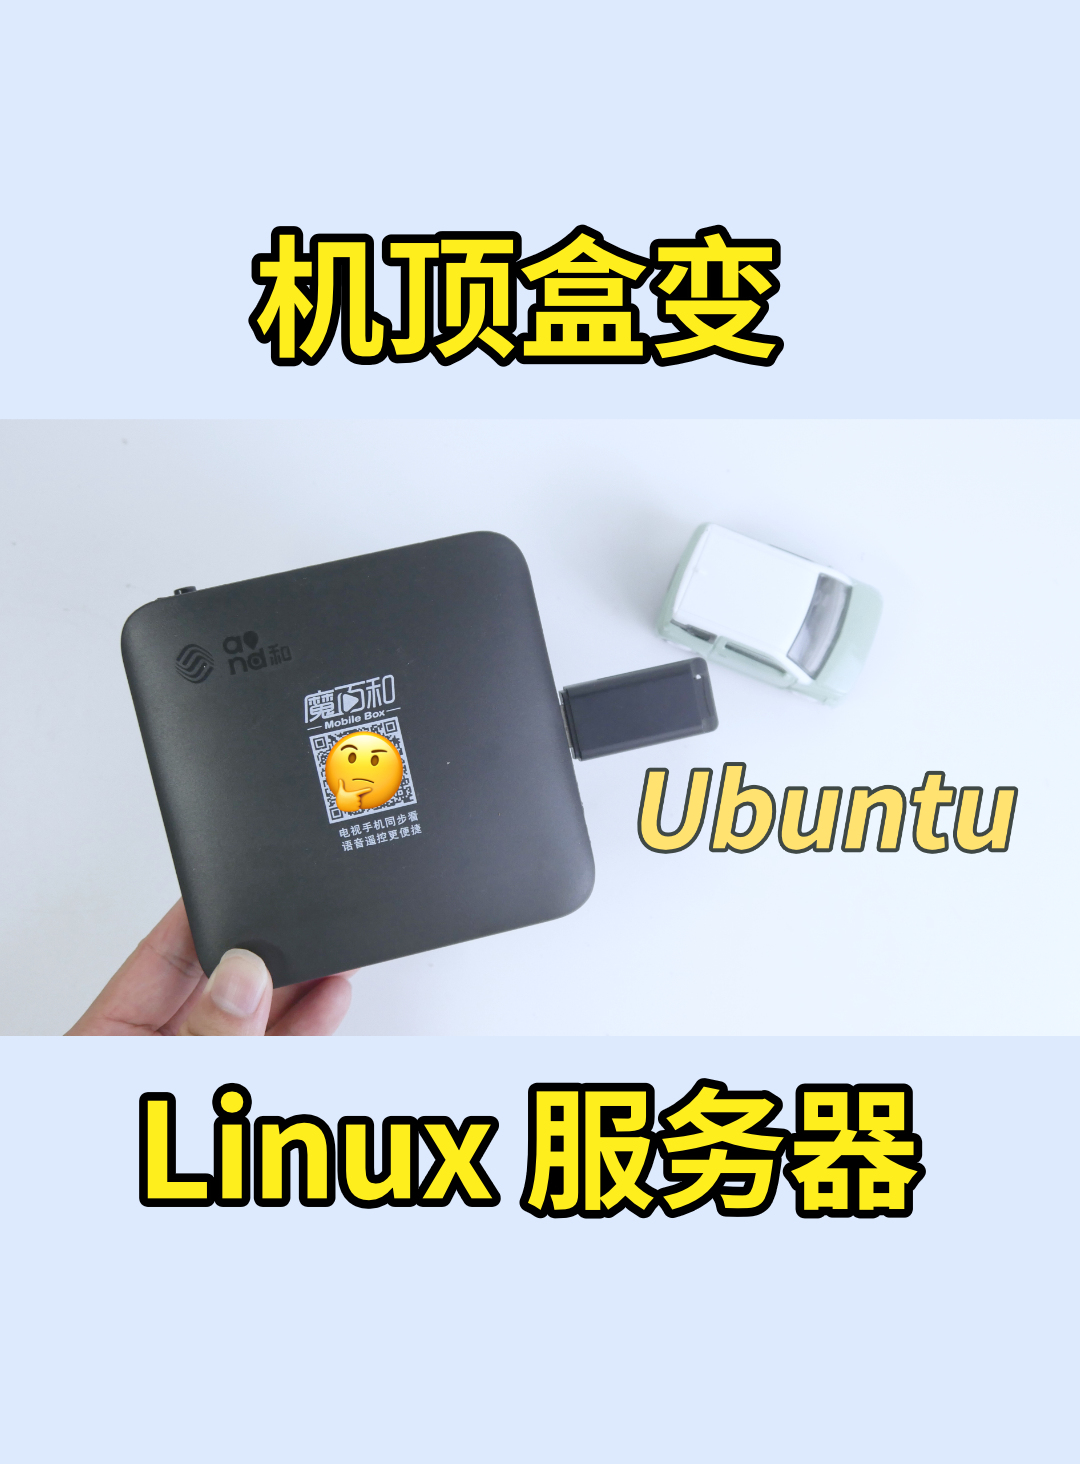 又把機頂盒刷為 Ubuntu 當 Linux 服務器，新款魔百盒 CM311-1A-YST 刷 armbian